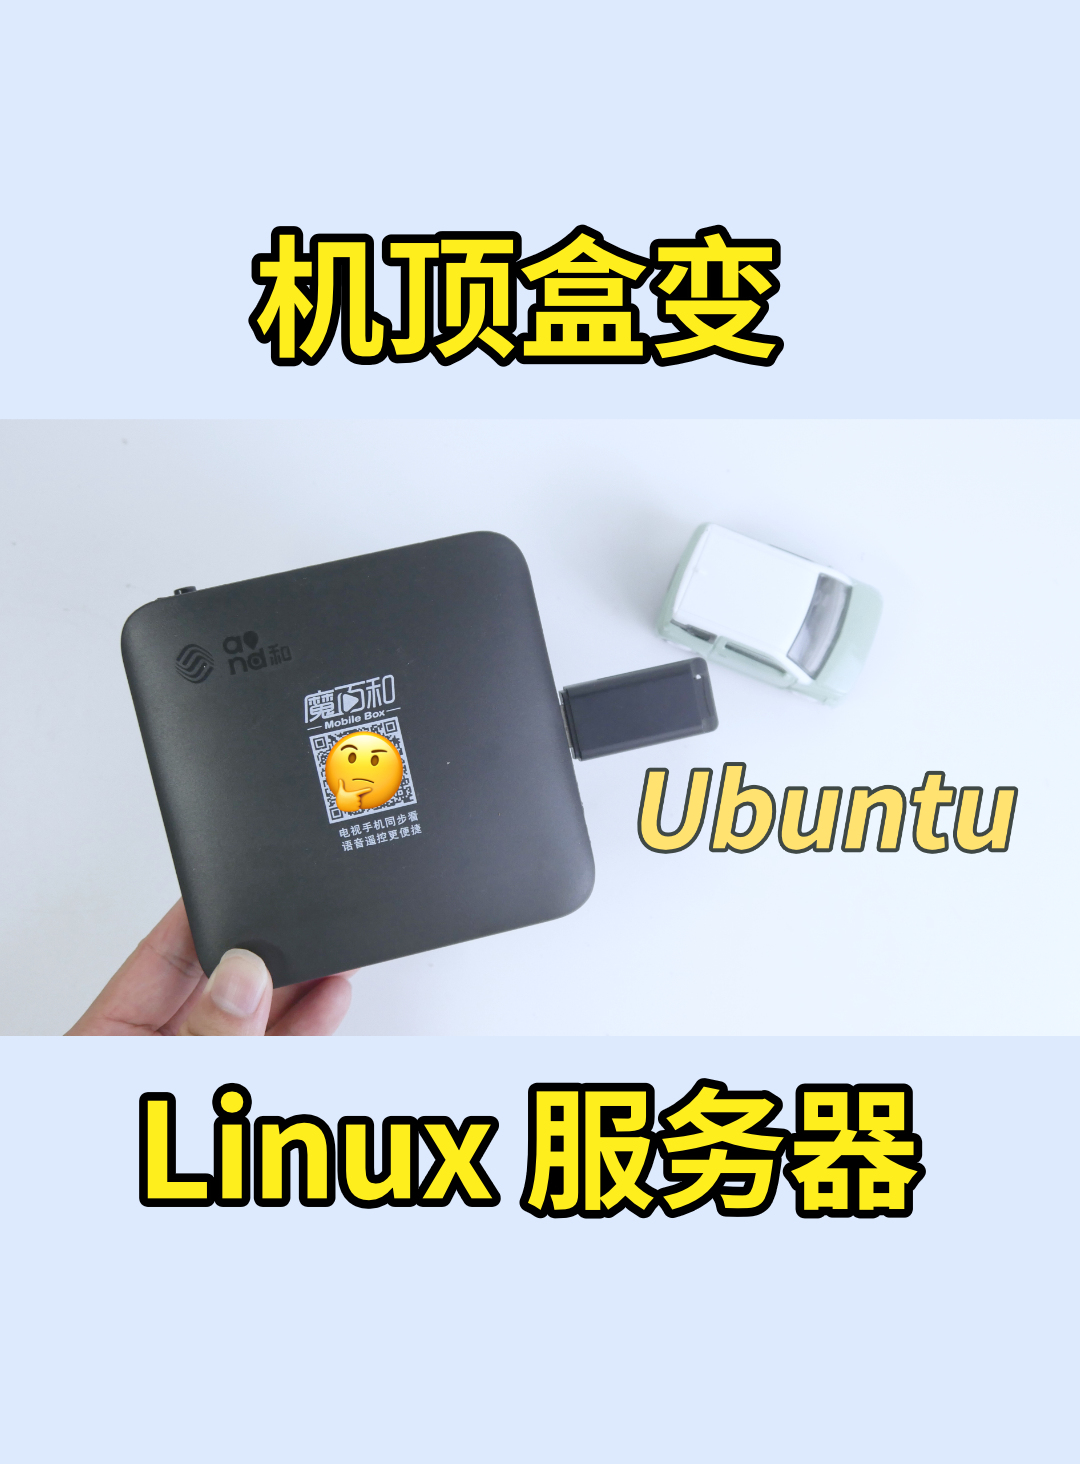 又把機頂盒刷為 Ubuntu 當 Linux 服務器，新款魔百盒 CM311-1A-YST 刷 armbian